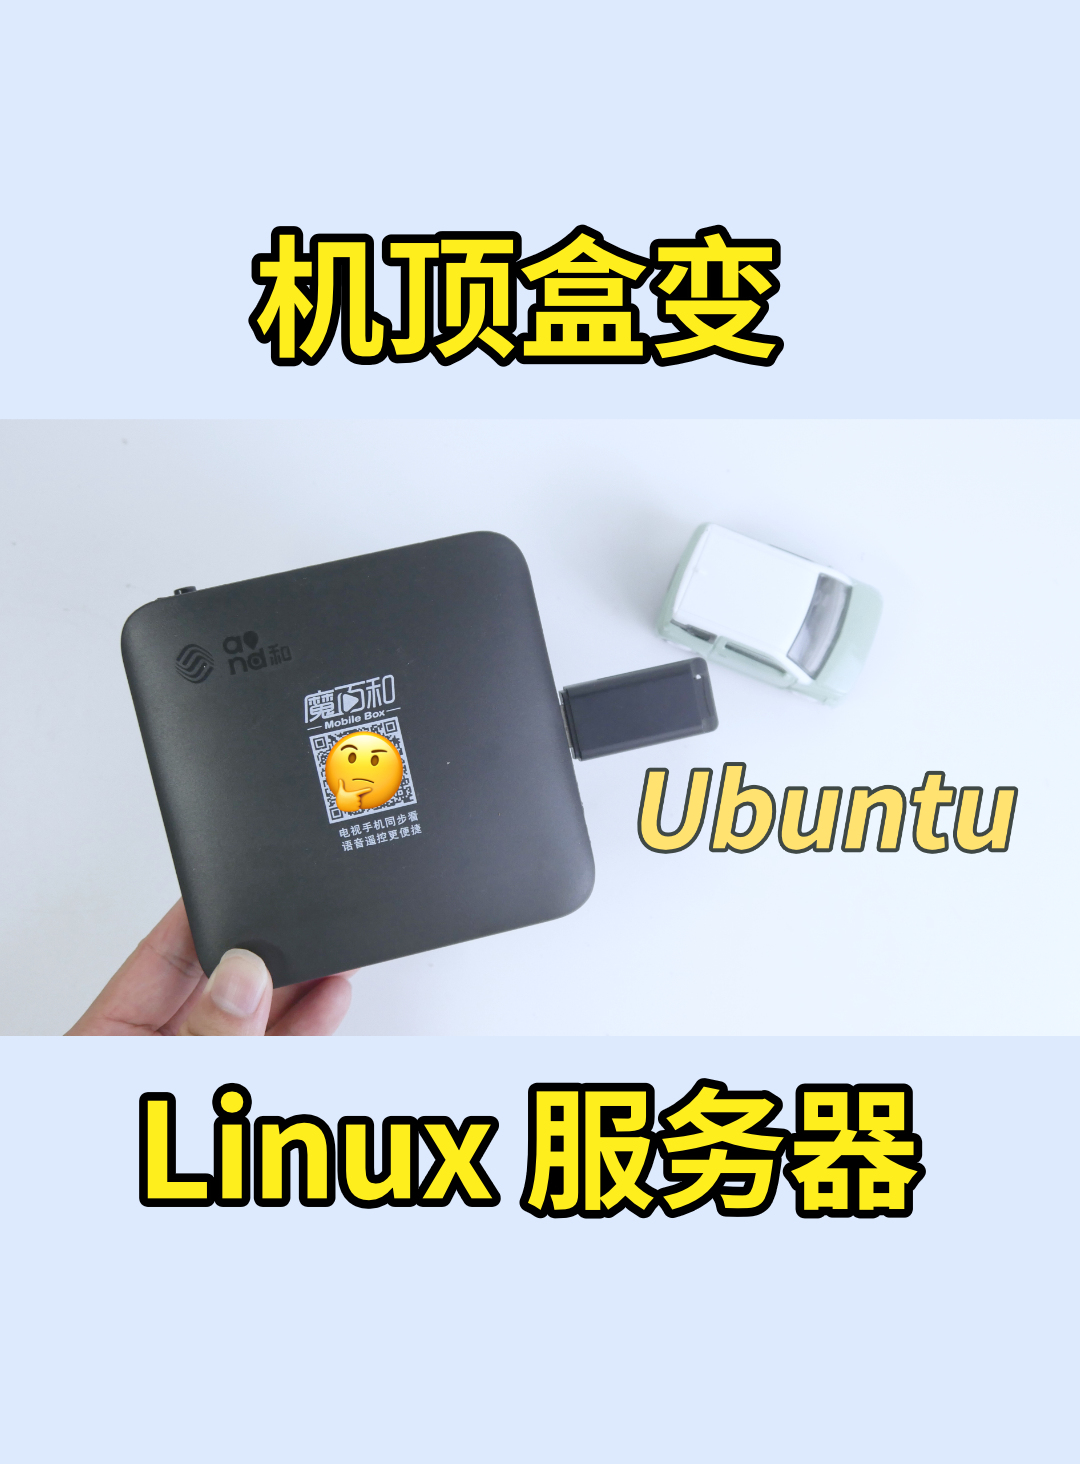 又把機頂盒刷為 Ubuntu 當 Linux 服務器，新款魔百盒 CM311-1A-YST 刷 armbian